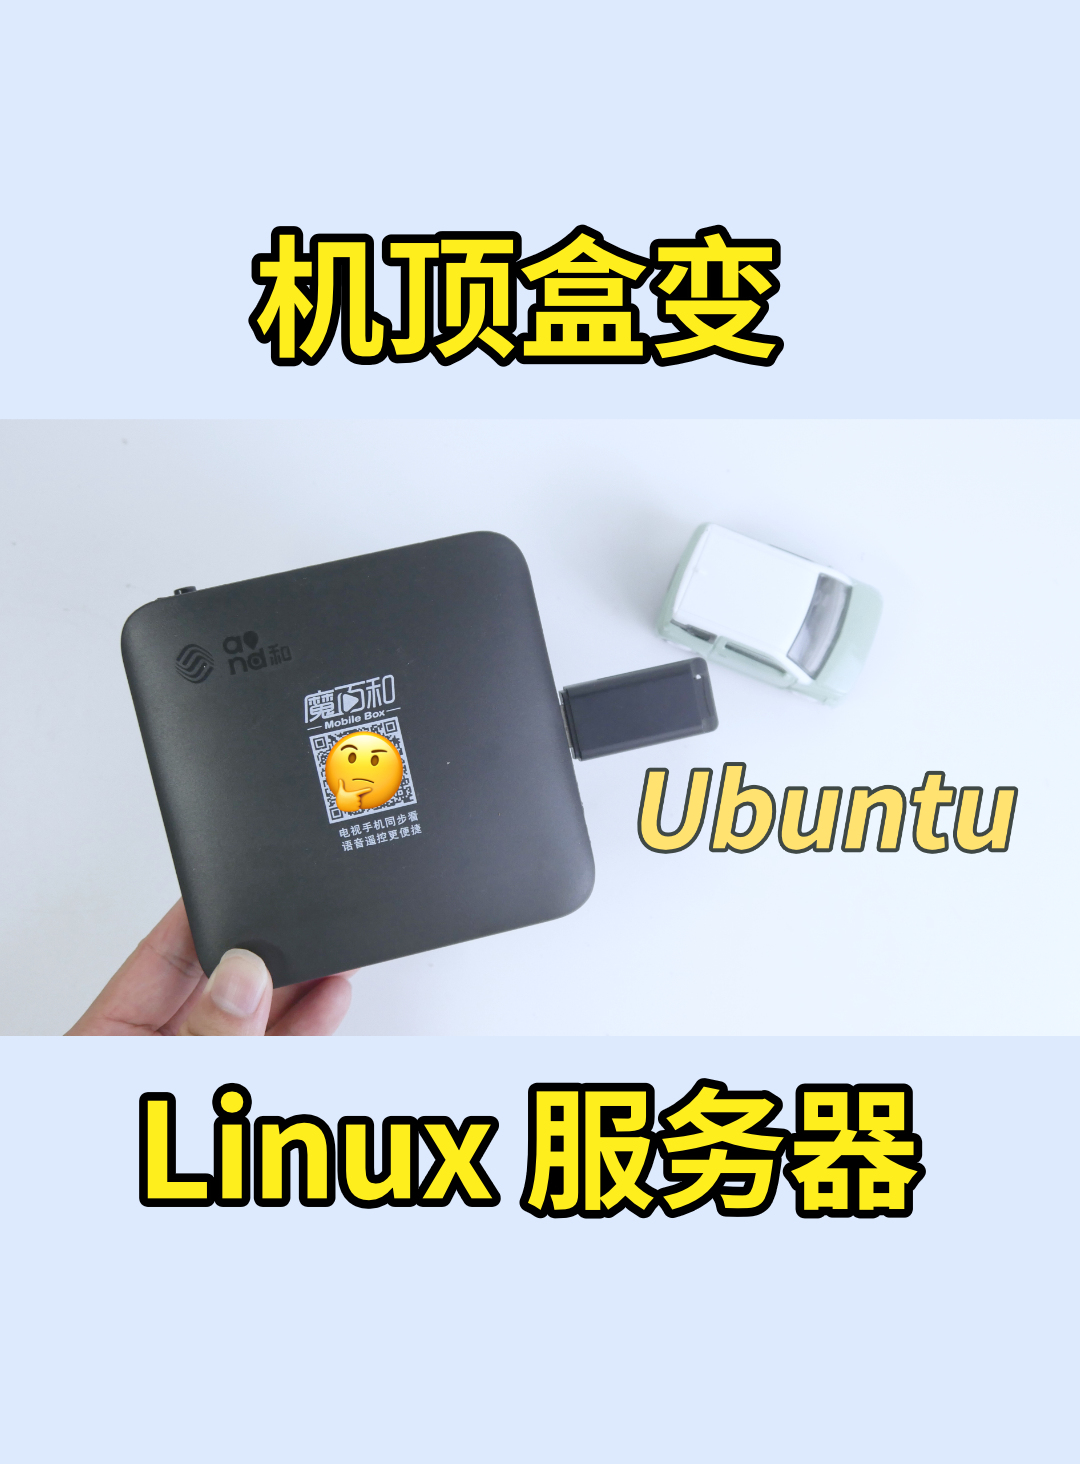 又把機頂盒刷為 Ubuntu 當 Linux 服務器，新款魔百盒 CM311-1A-YST 刷 armbian